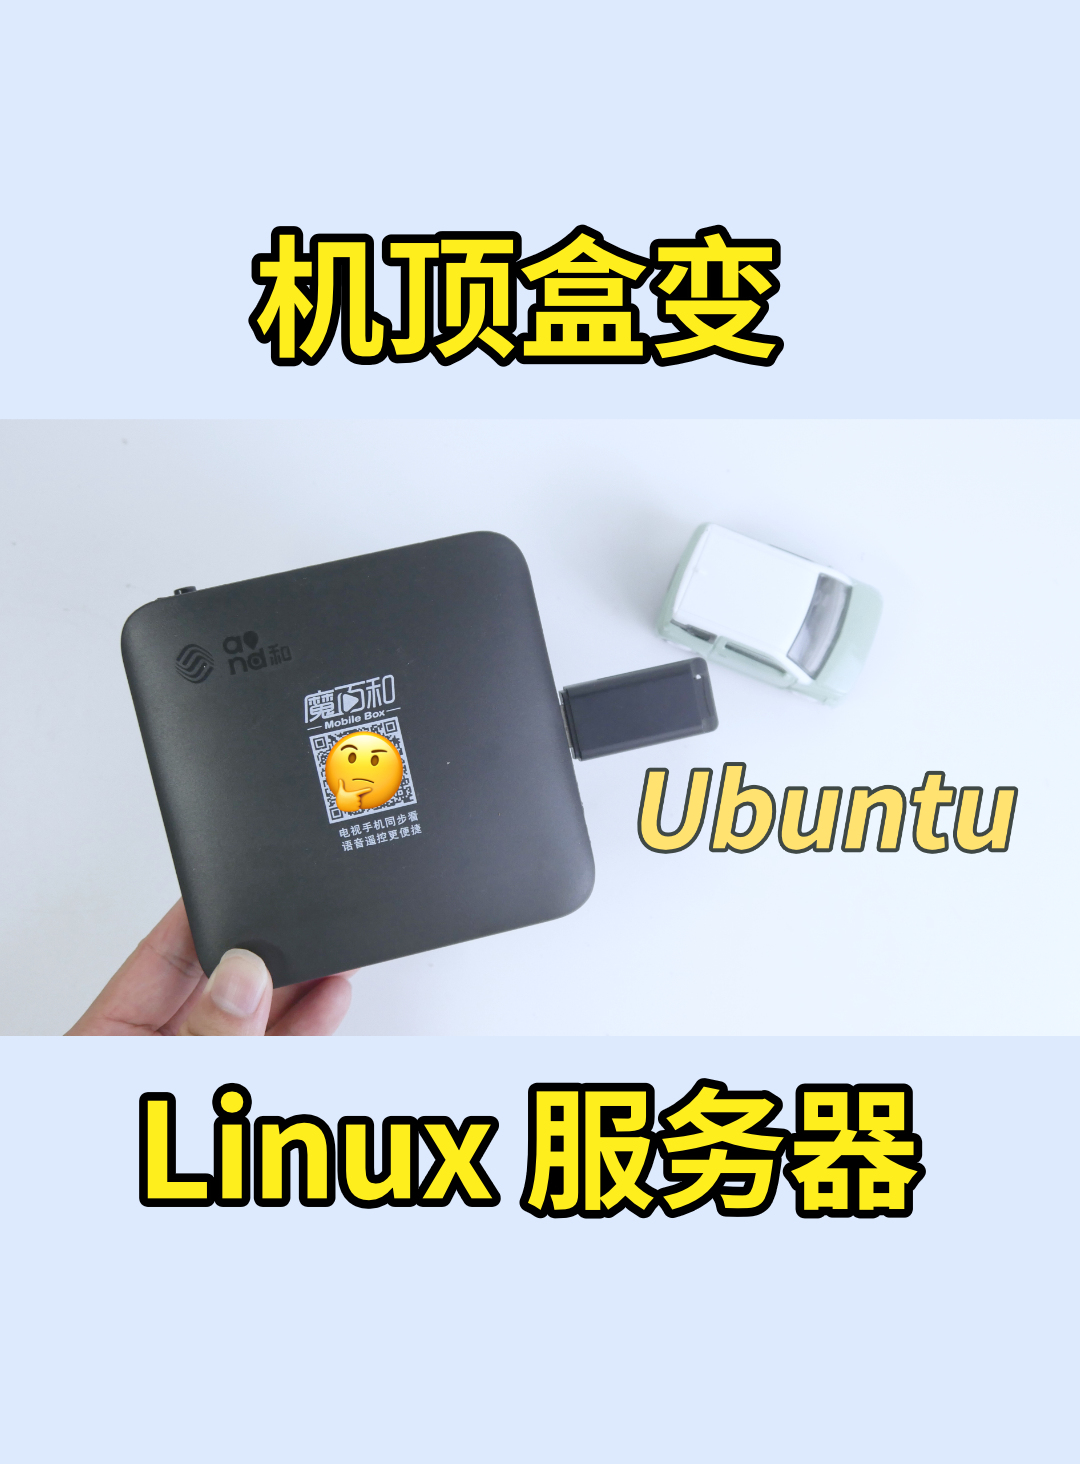 又把機頂盒刷為 Ubuntu 當 Linux 服務器，新款魔百盒 CM311-1A-YST 刷 armbian